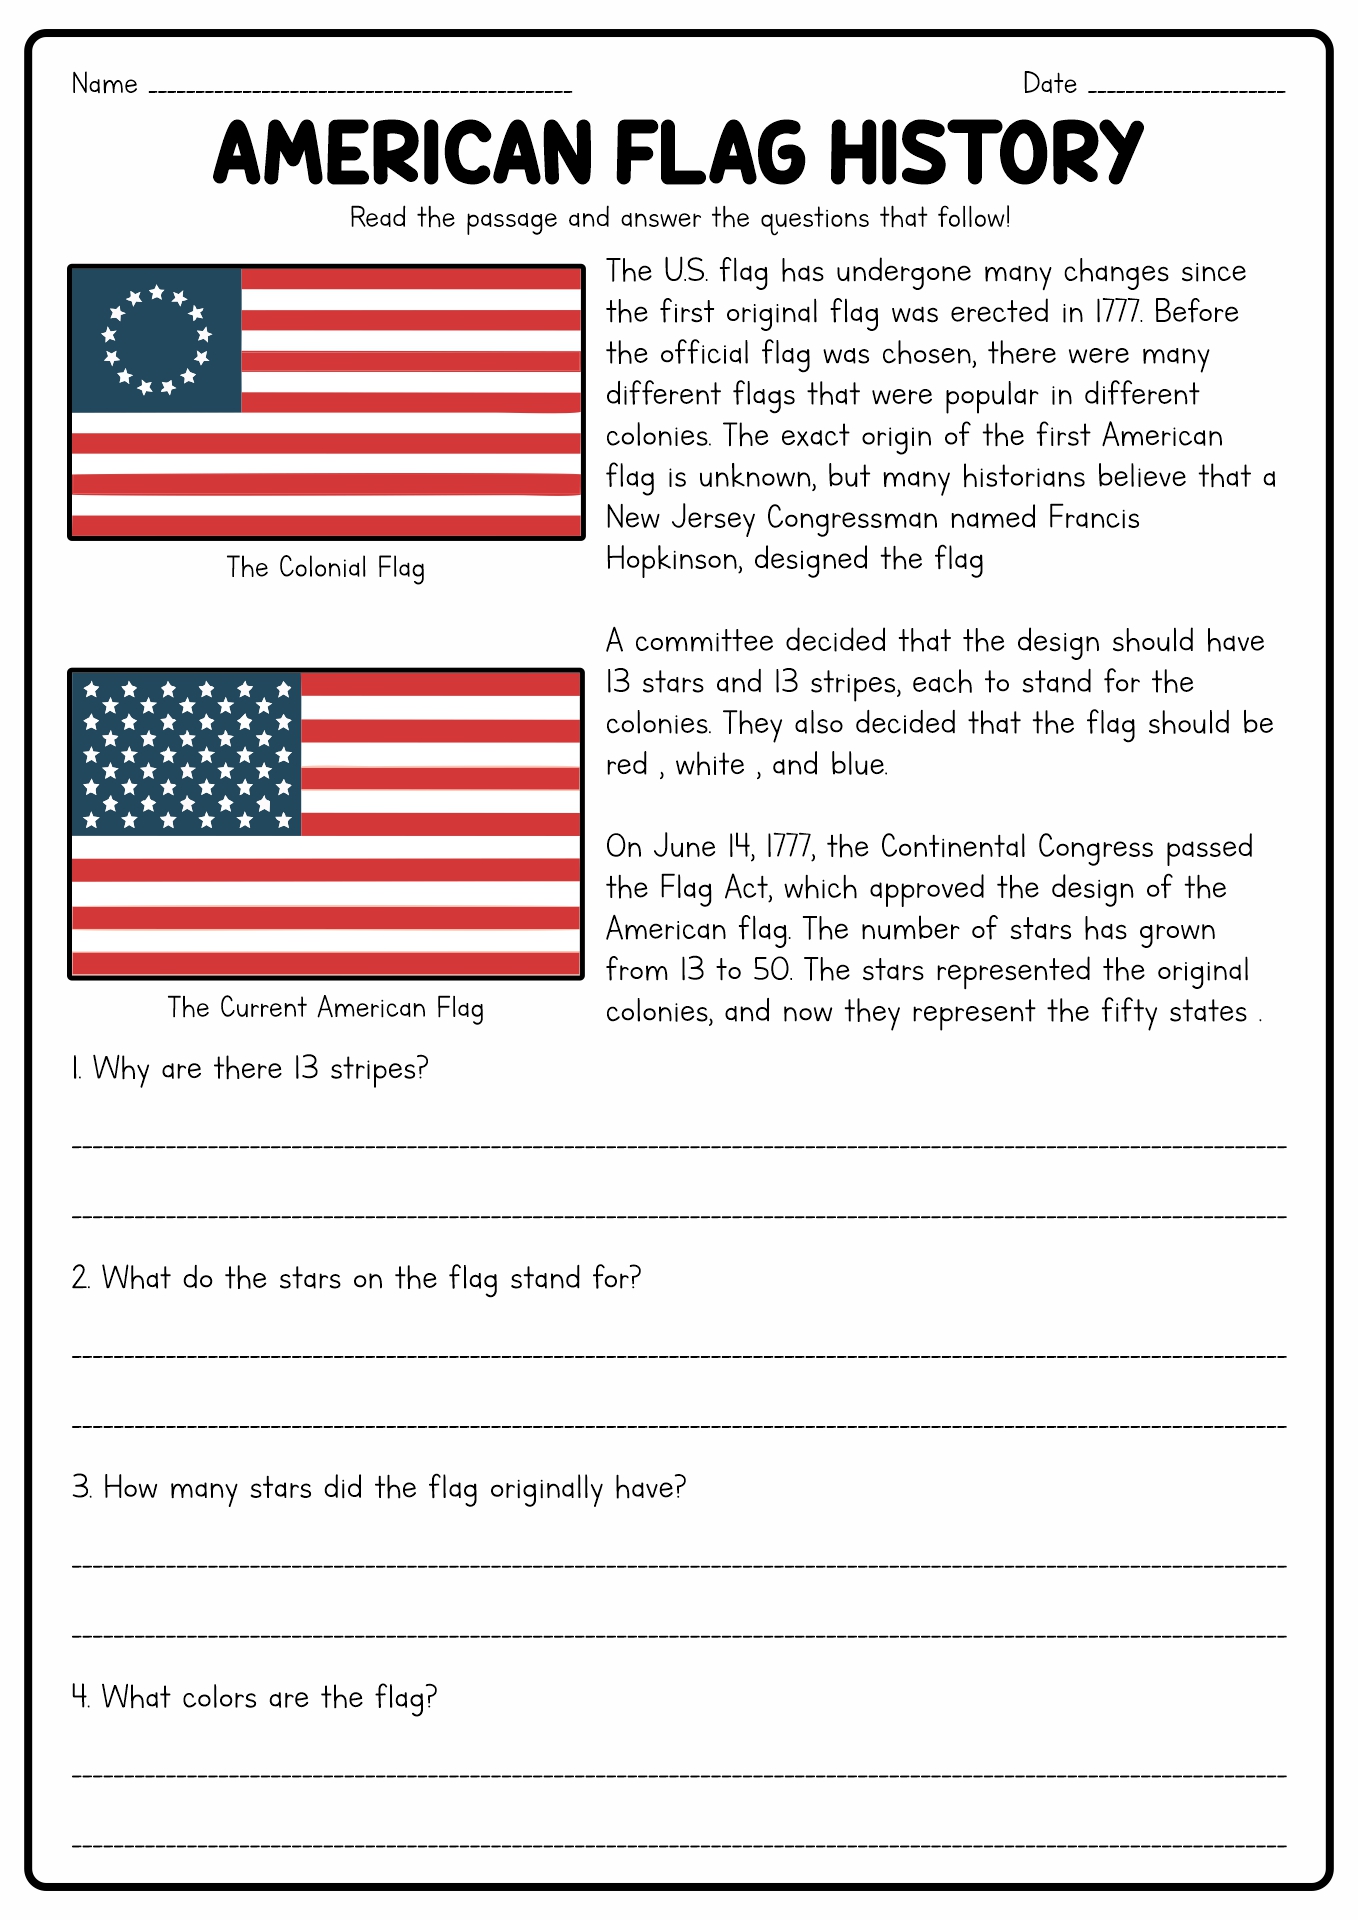 American Flag History Worksheet